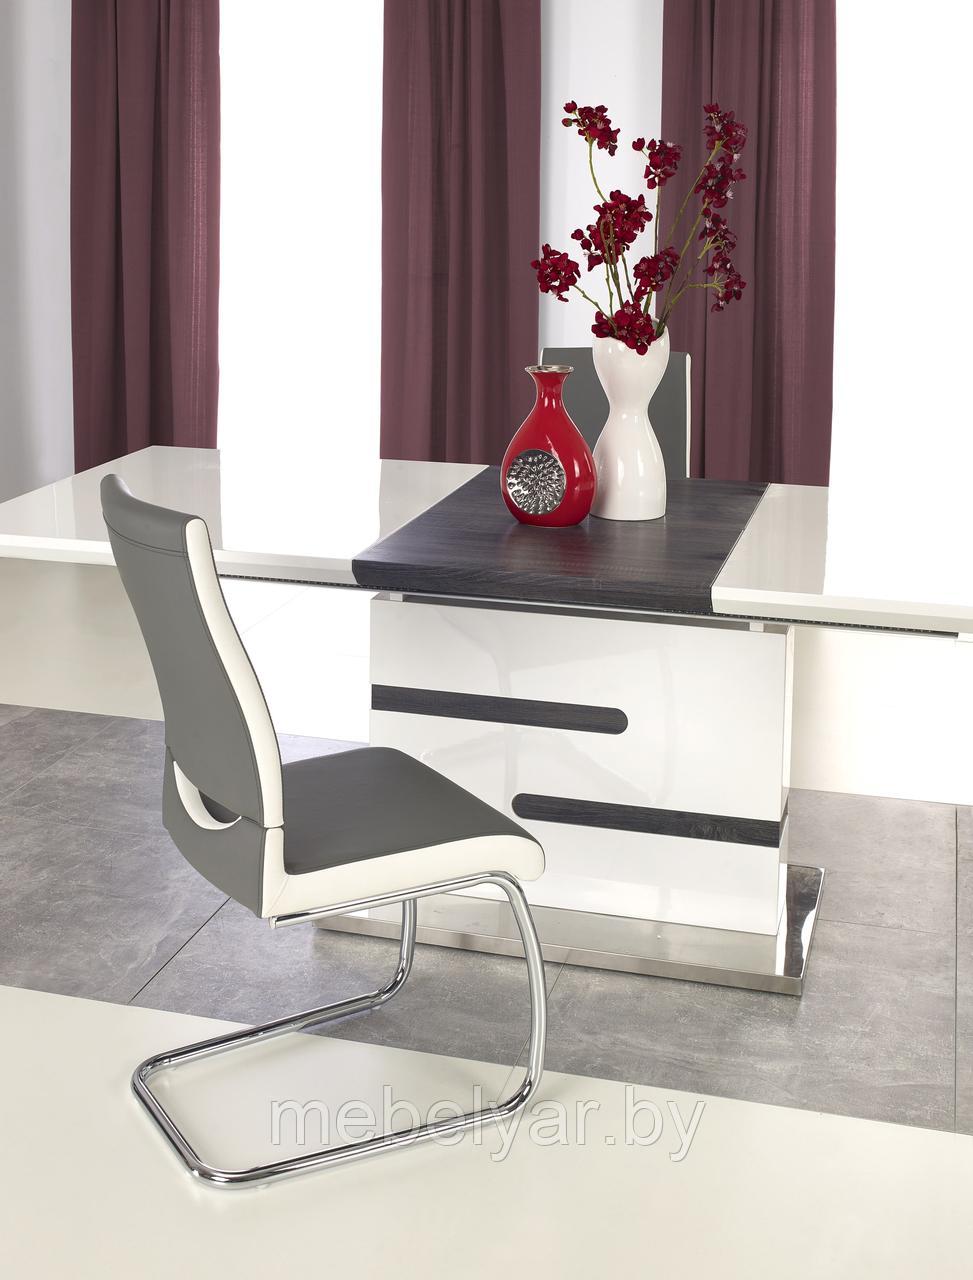 Стол обеденный HALMAR MONACO раскладной, белый/серый, 160-220/90/76, фото 1